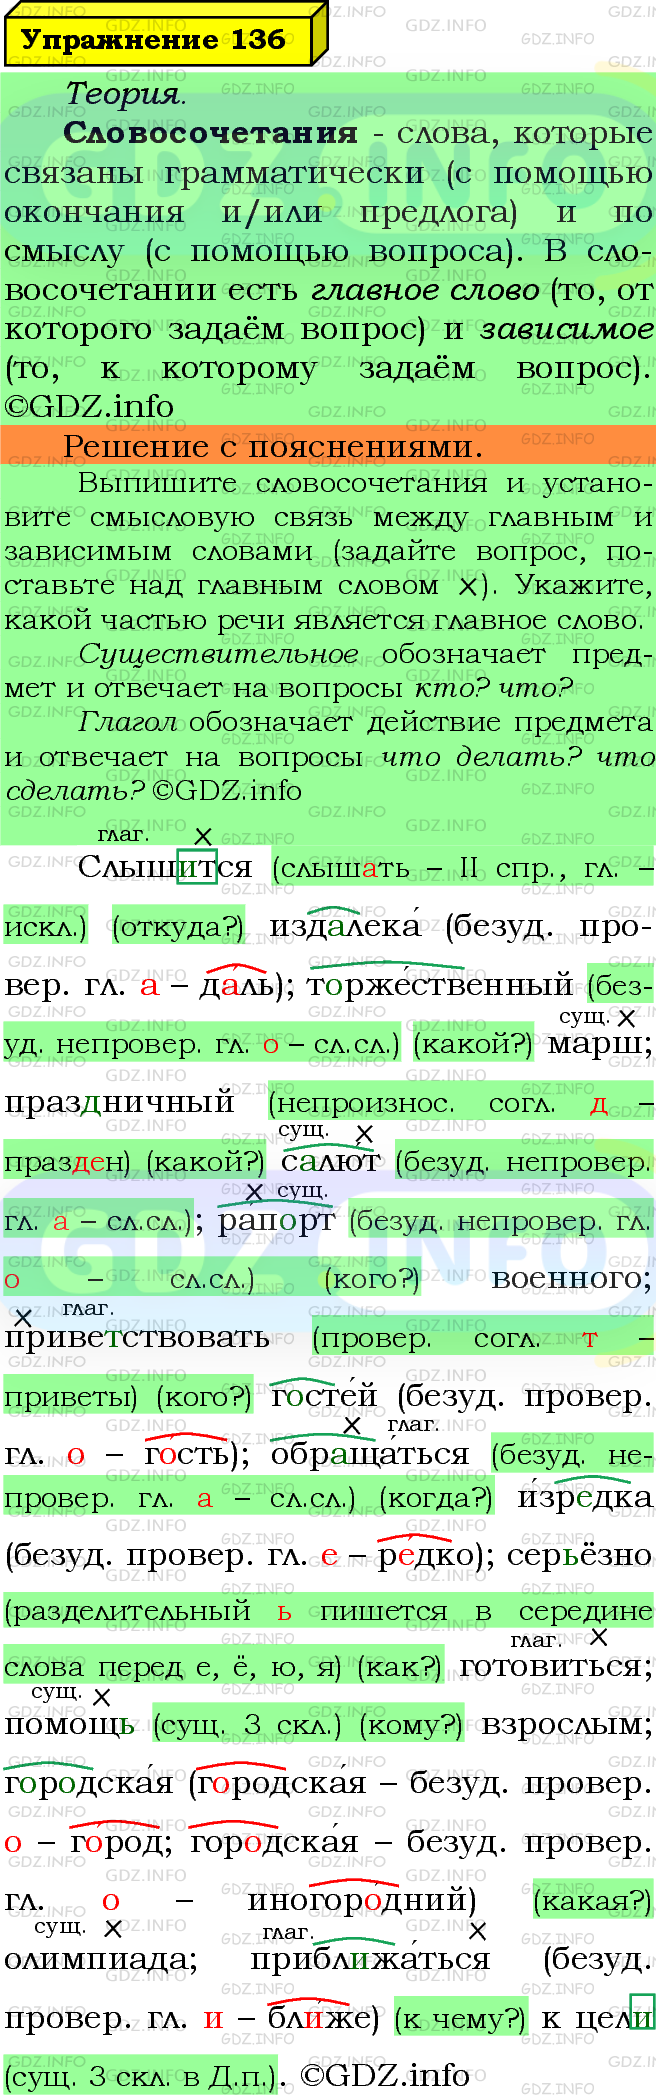 Фото решения 6: Номер №136 из ГДЗ по Русскому языку 5 класс: Ладыженская Т.А. 2019г.